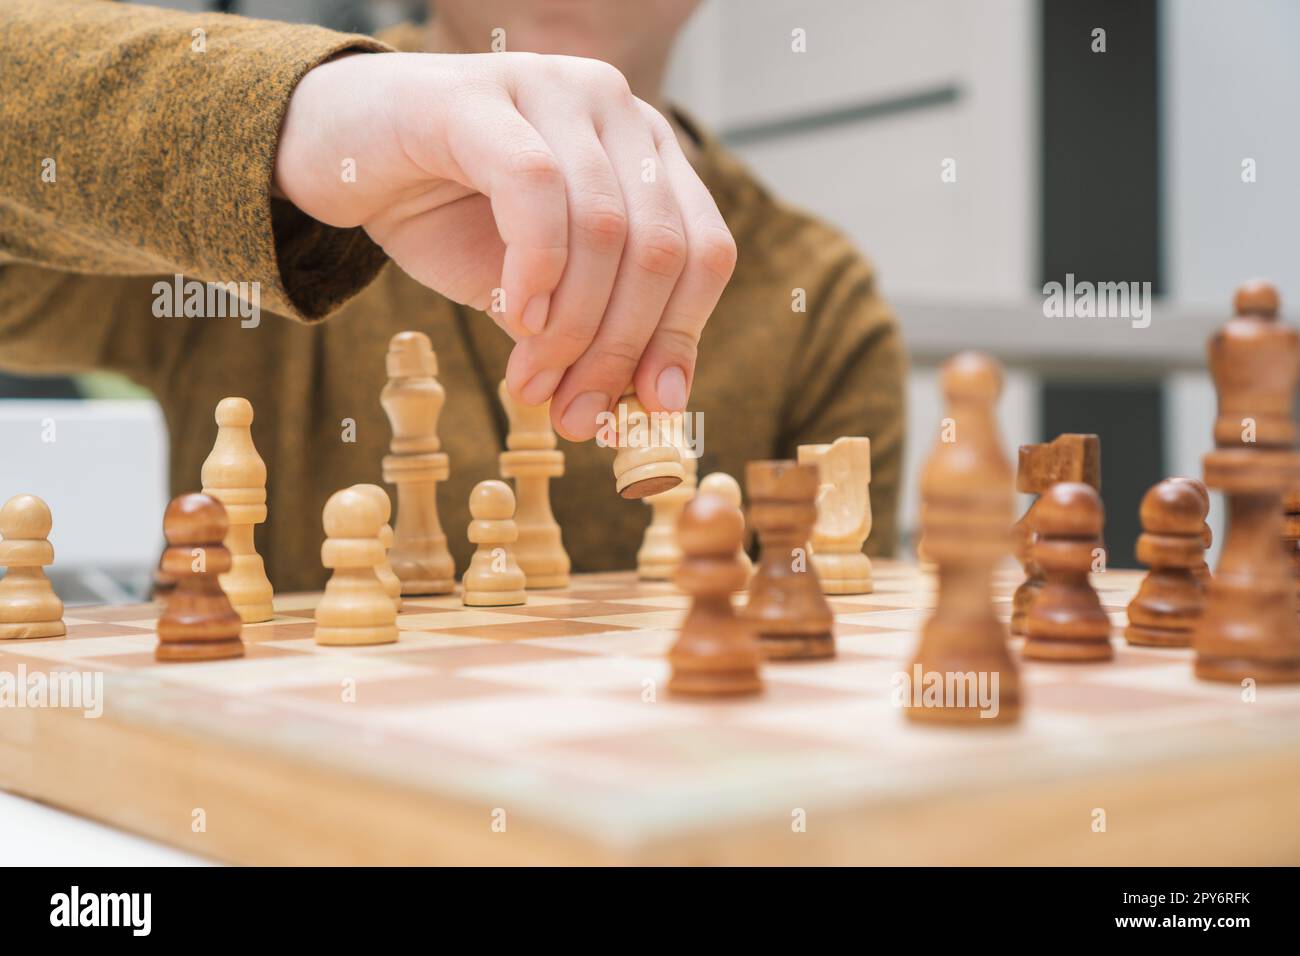 Un garçon joue aux échecs assis près de la table. Main de l'enfant déplacer le pion blanc sur l'échiquier en bois. Stratégie de jeu, tactiques. Banque D'Images